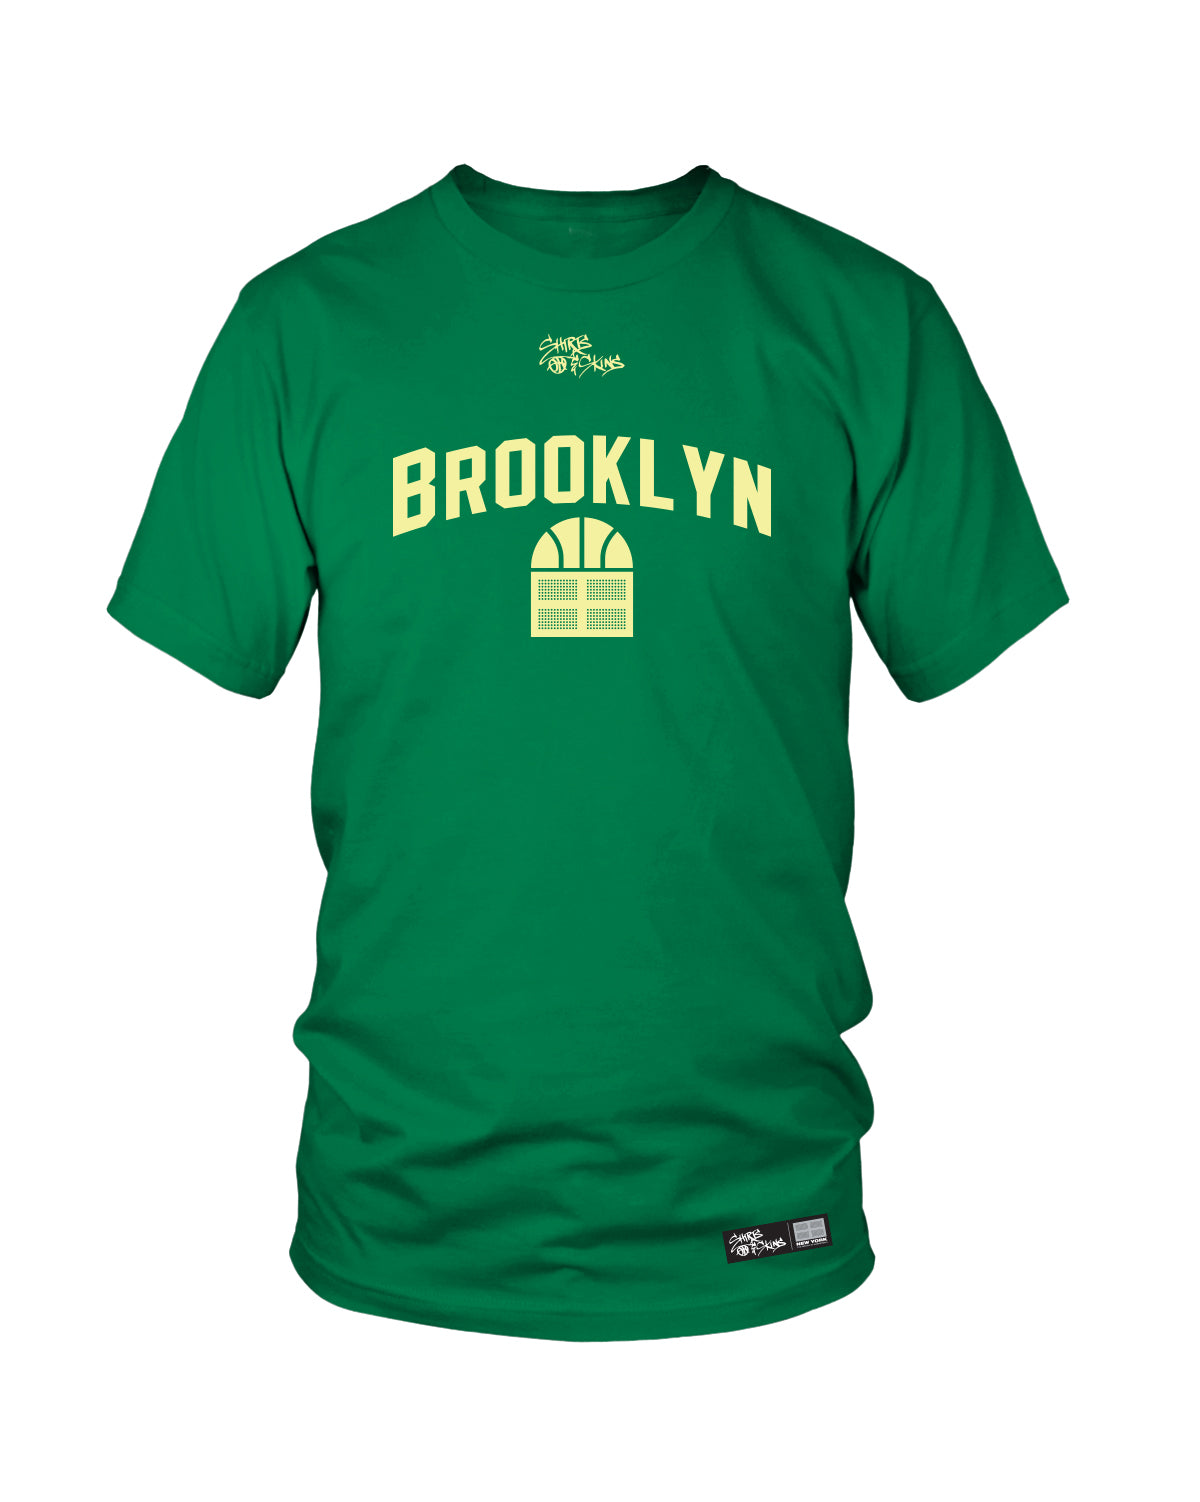 Shirts & Skins Brooklyn Tee